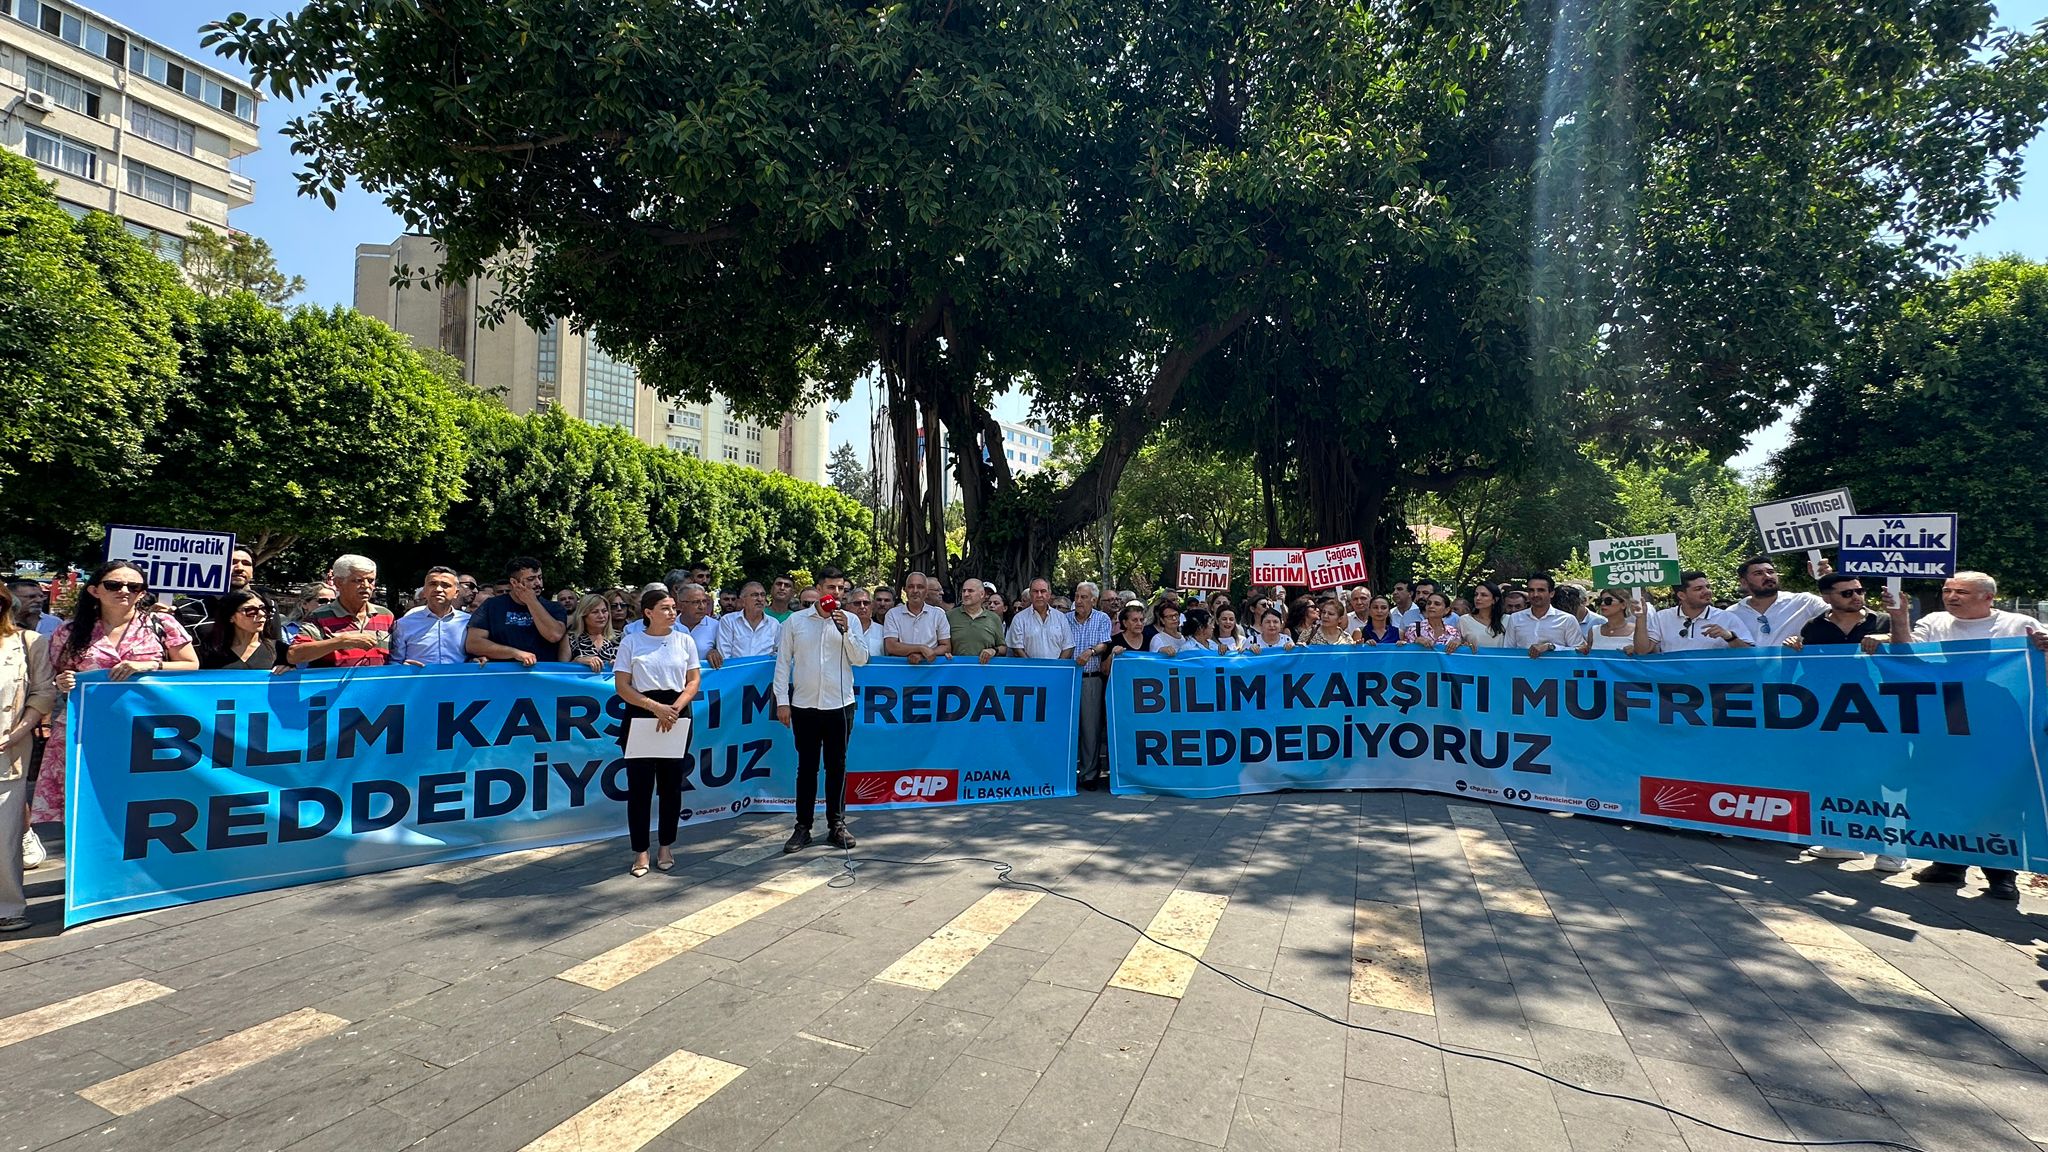 CHP Adana'dan tepki: Bilim karşıtı eğitimi reddediyoruz